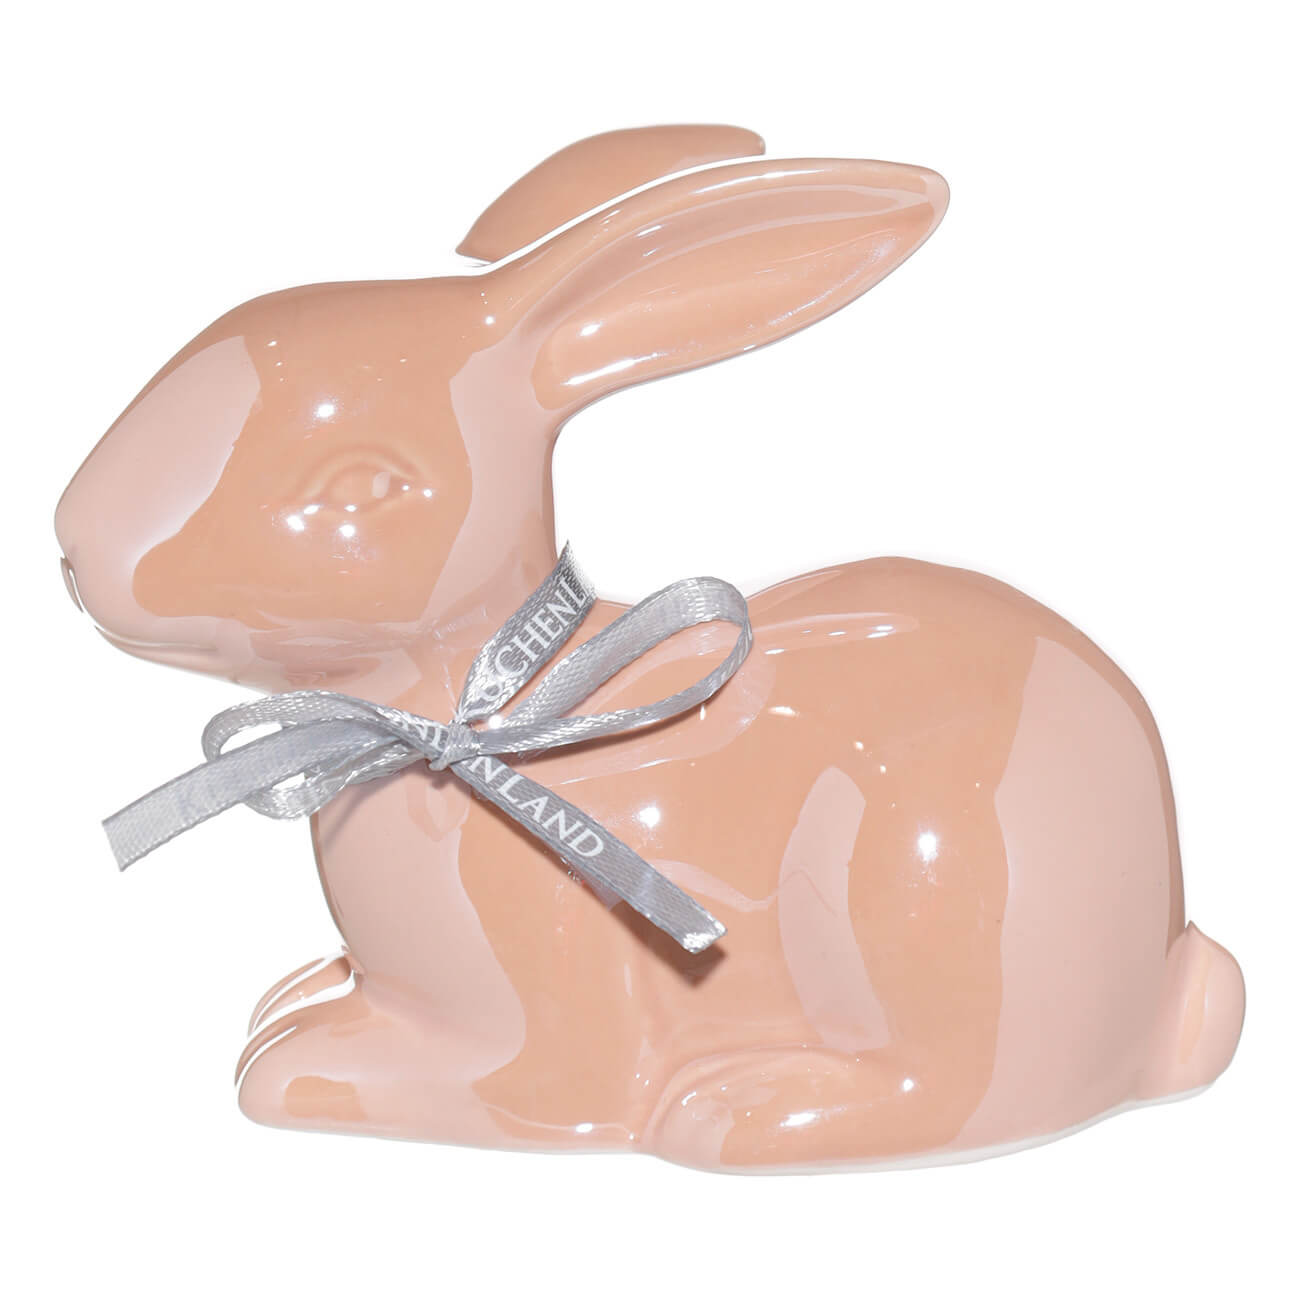 Статуэтка, 12х11 см, керамика, розовая, перламутр, Кролик лежит, Easter